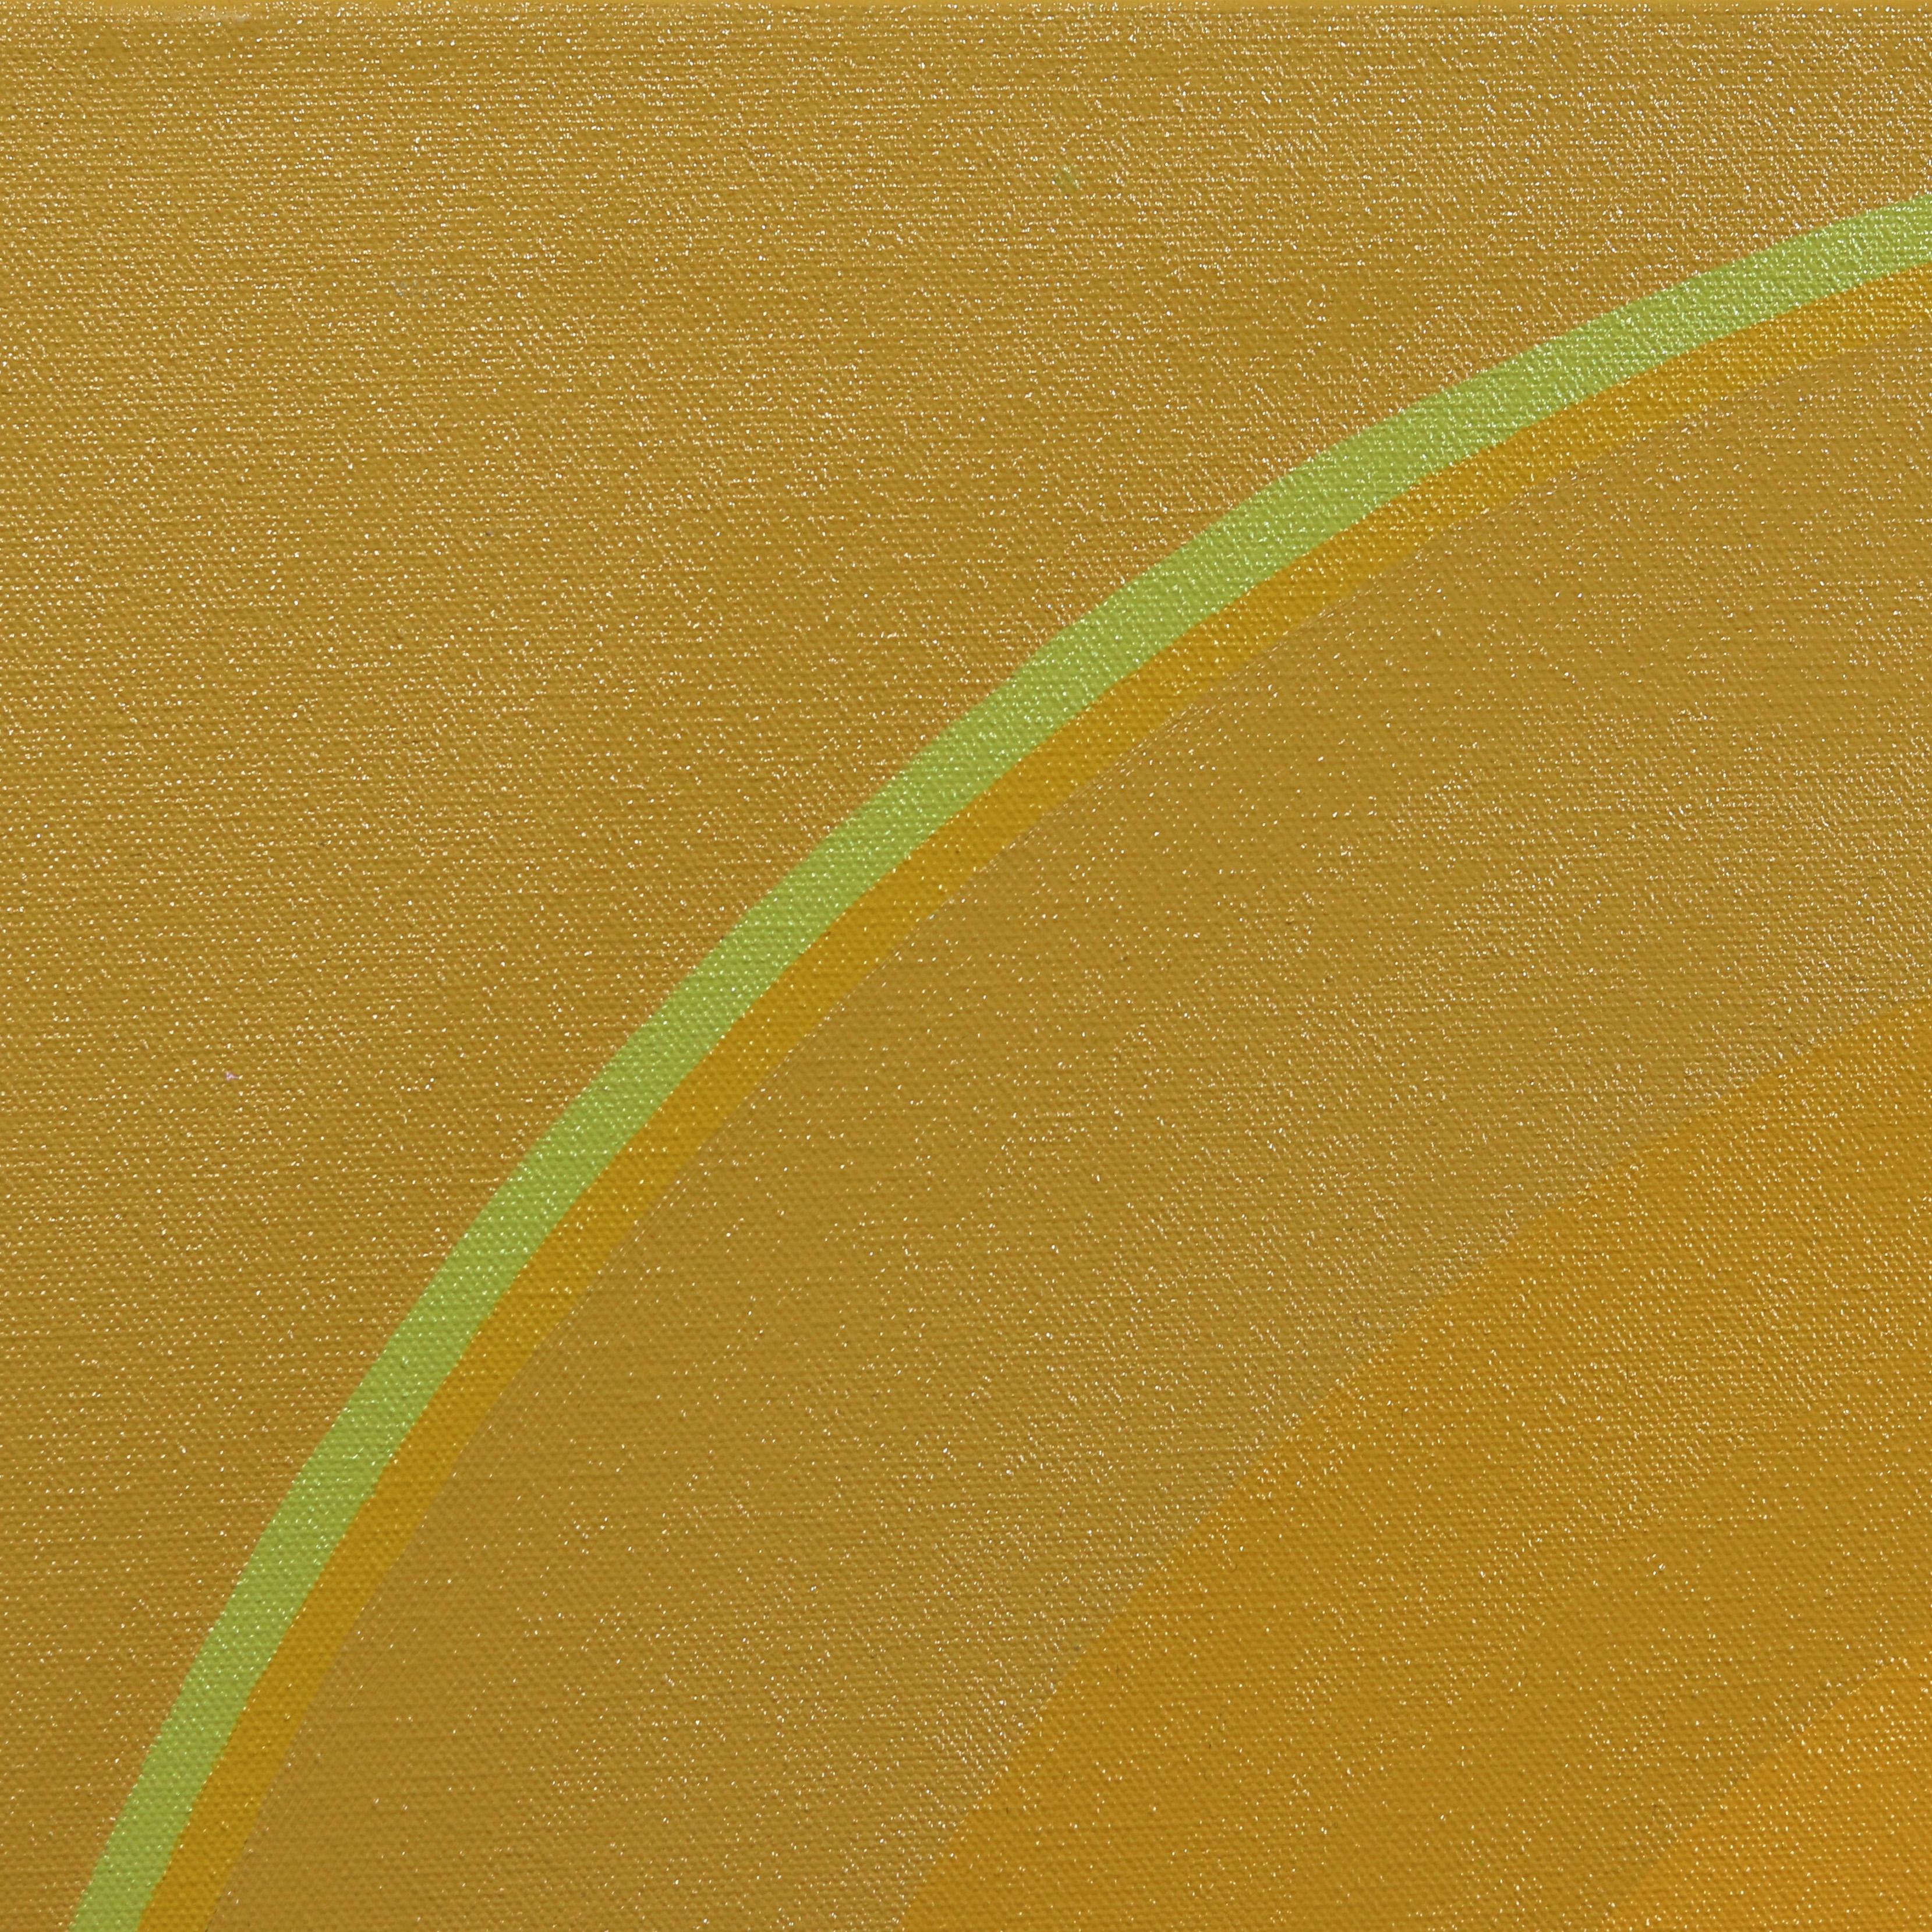 S'inspirant du vibrant paysage californien, l'artiste britannique Paul Westacott crée des œuvres d'art abstraites originales qui présentent un mélange harmonieux de géométrie minimaliste et de couleurs audacieuses. L'objectif artistique de Westacott